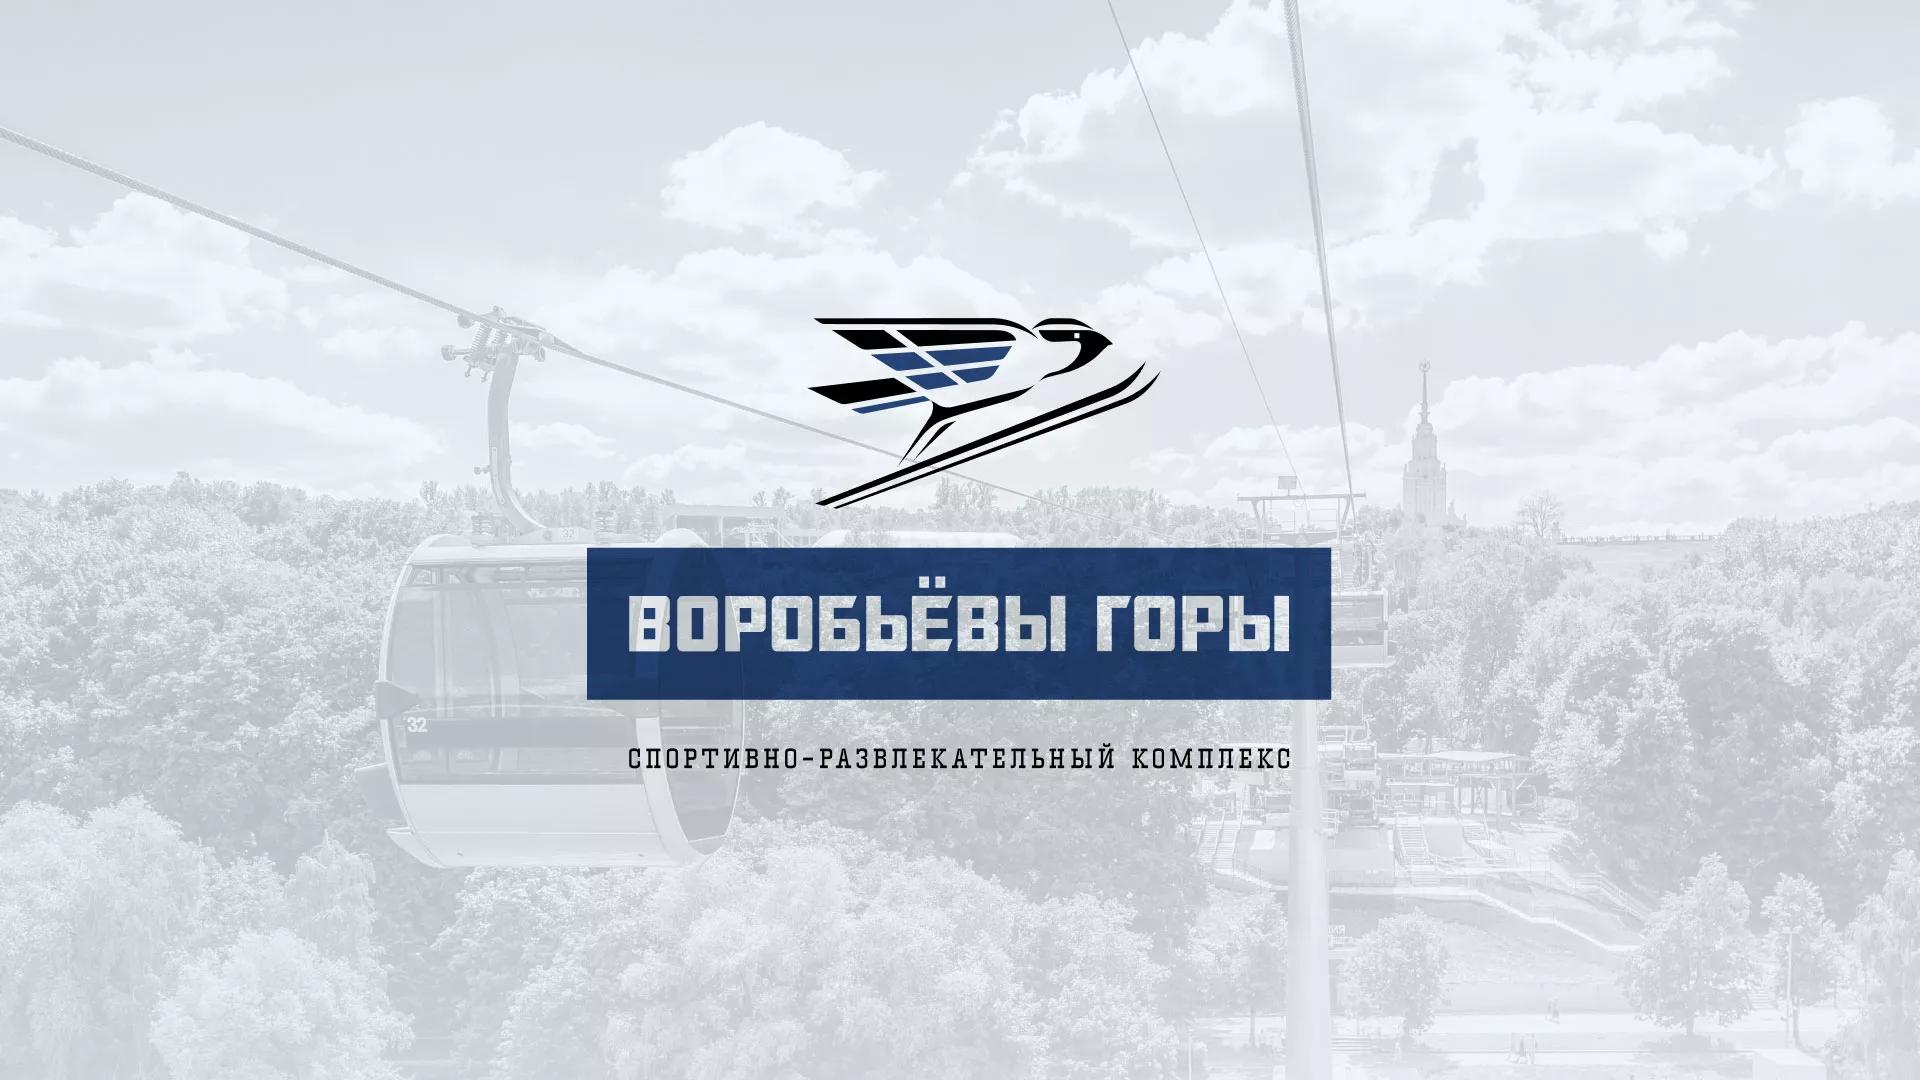 Разработка сайта в Байкальске для спортивно-развлекательного комплекса «Воробьёвы горы»